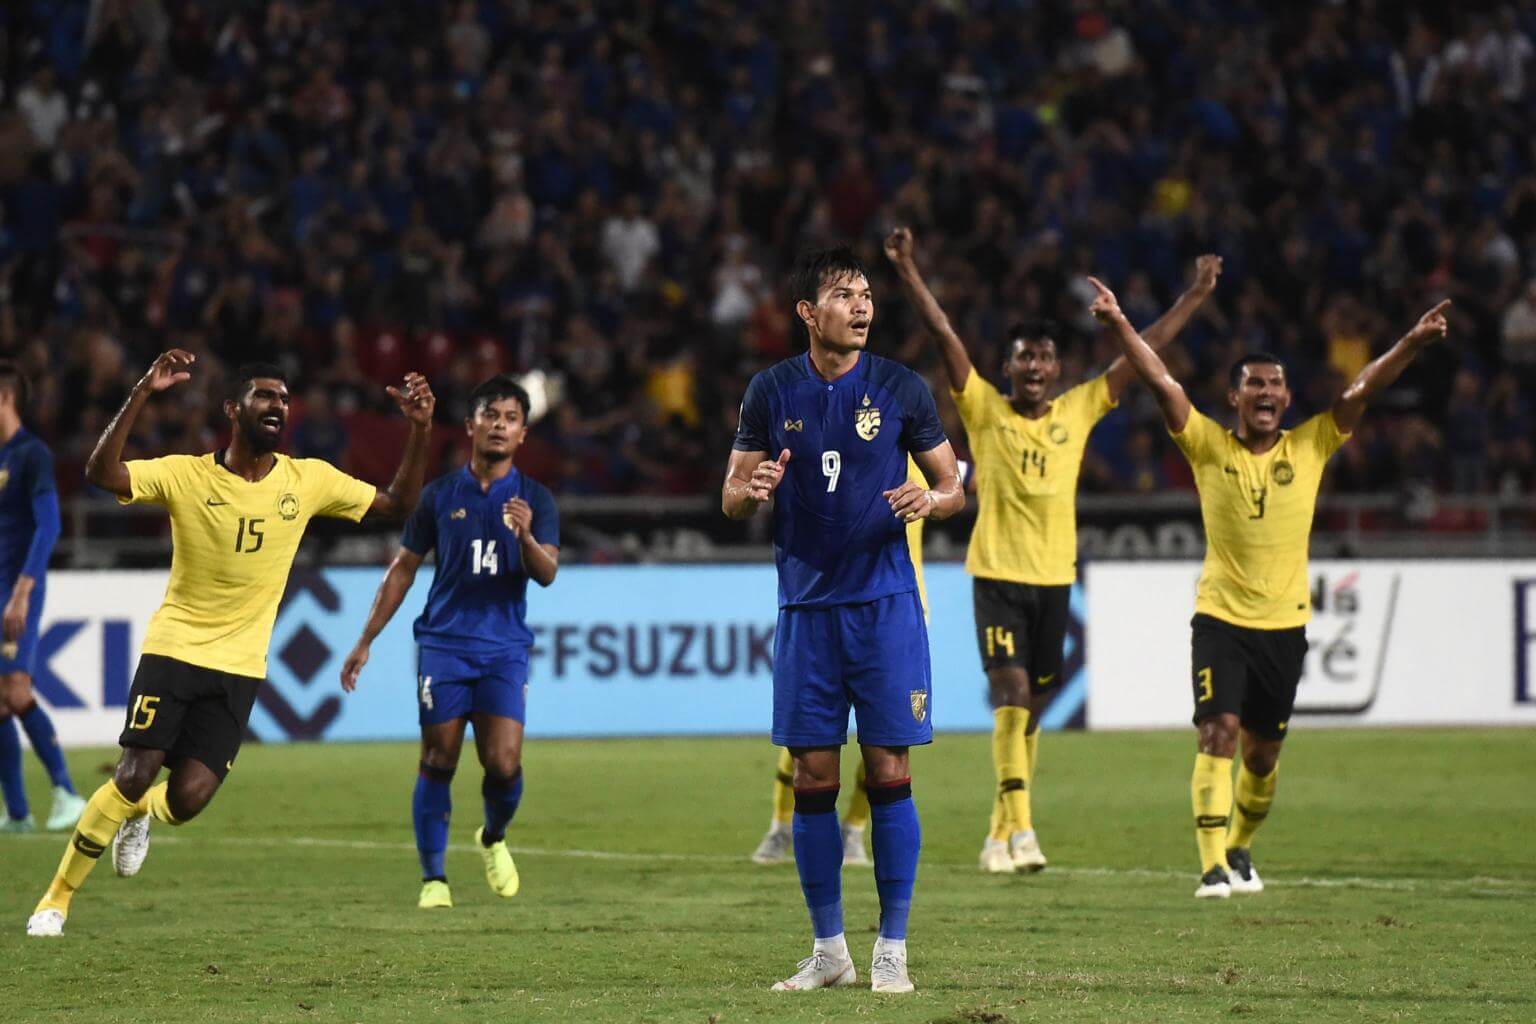 Cú đá phạt đền hỏng ăn phút bù giờ trận bán kết AFF Cup 2018 của Adisak khiến Thái Lan bị Malaysia loại và "Voi chiến" luôn xem Malaysia là đối thủ kỵ giơ. Ảnh: TL